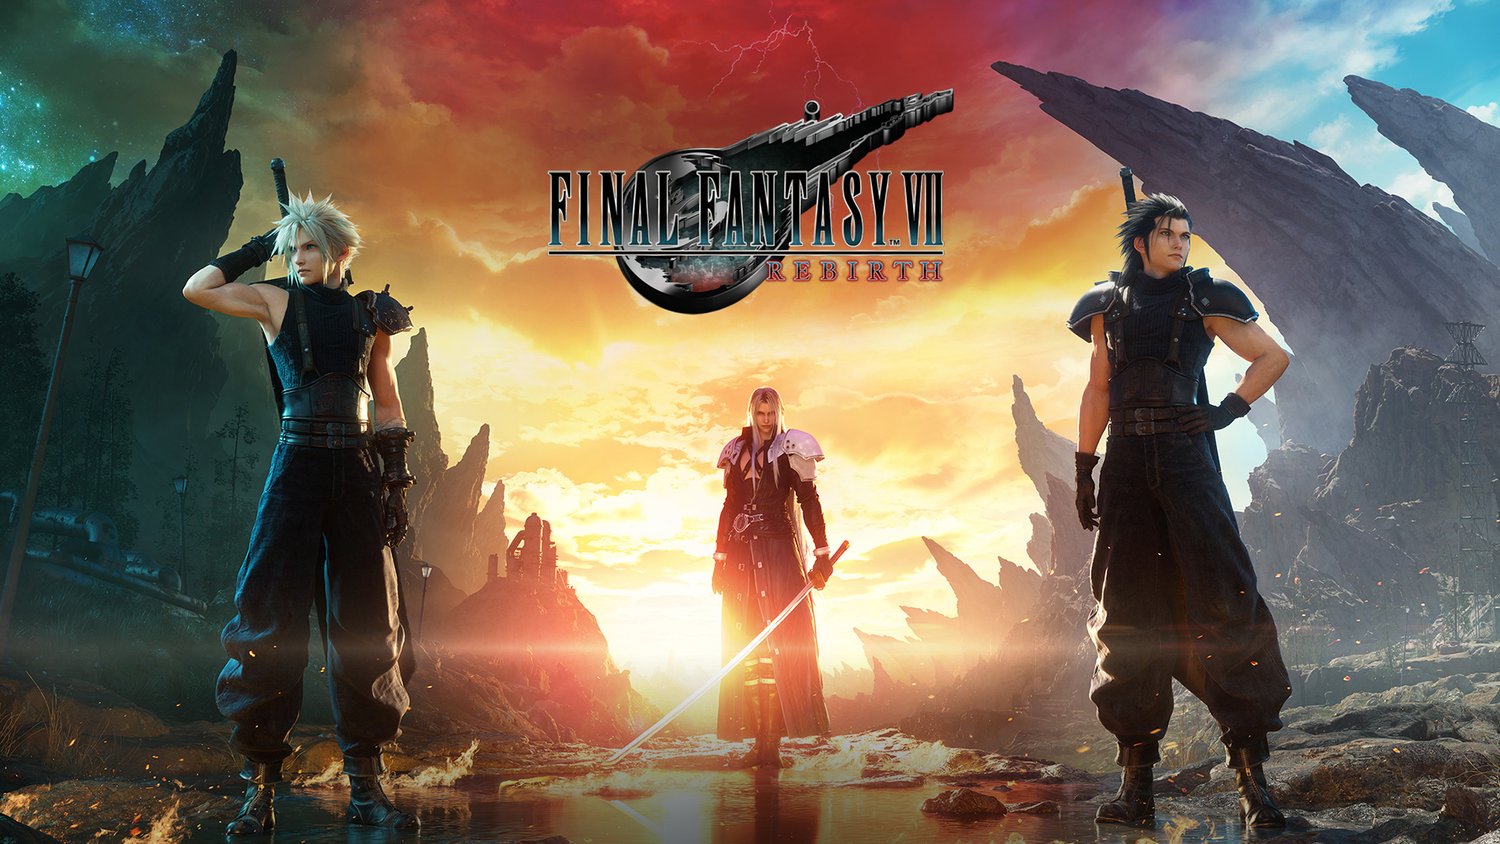 FINAL FANTASY VII 7 REBIRTH Collector's Edition, PS5 Square Enix Store  PRESALE